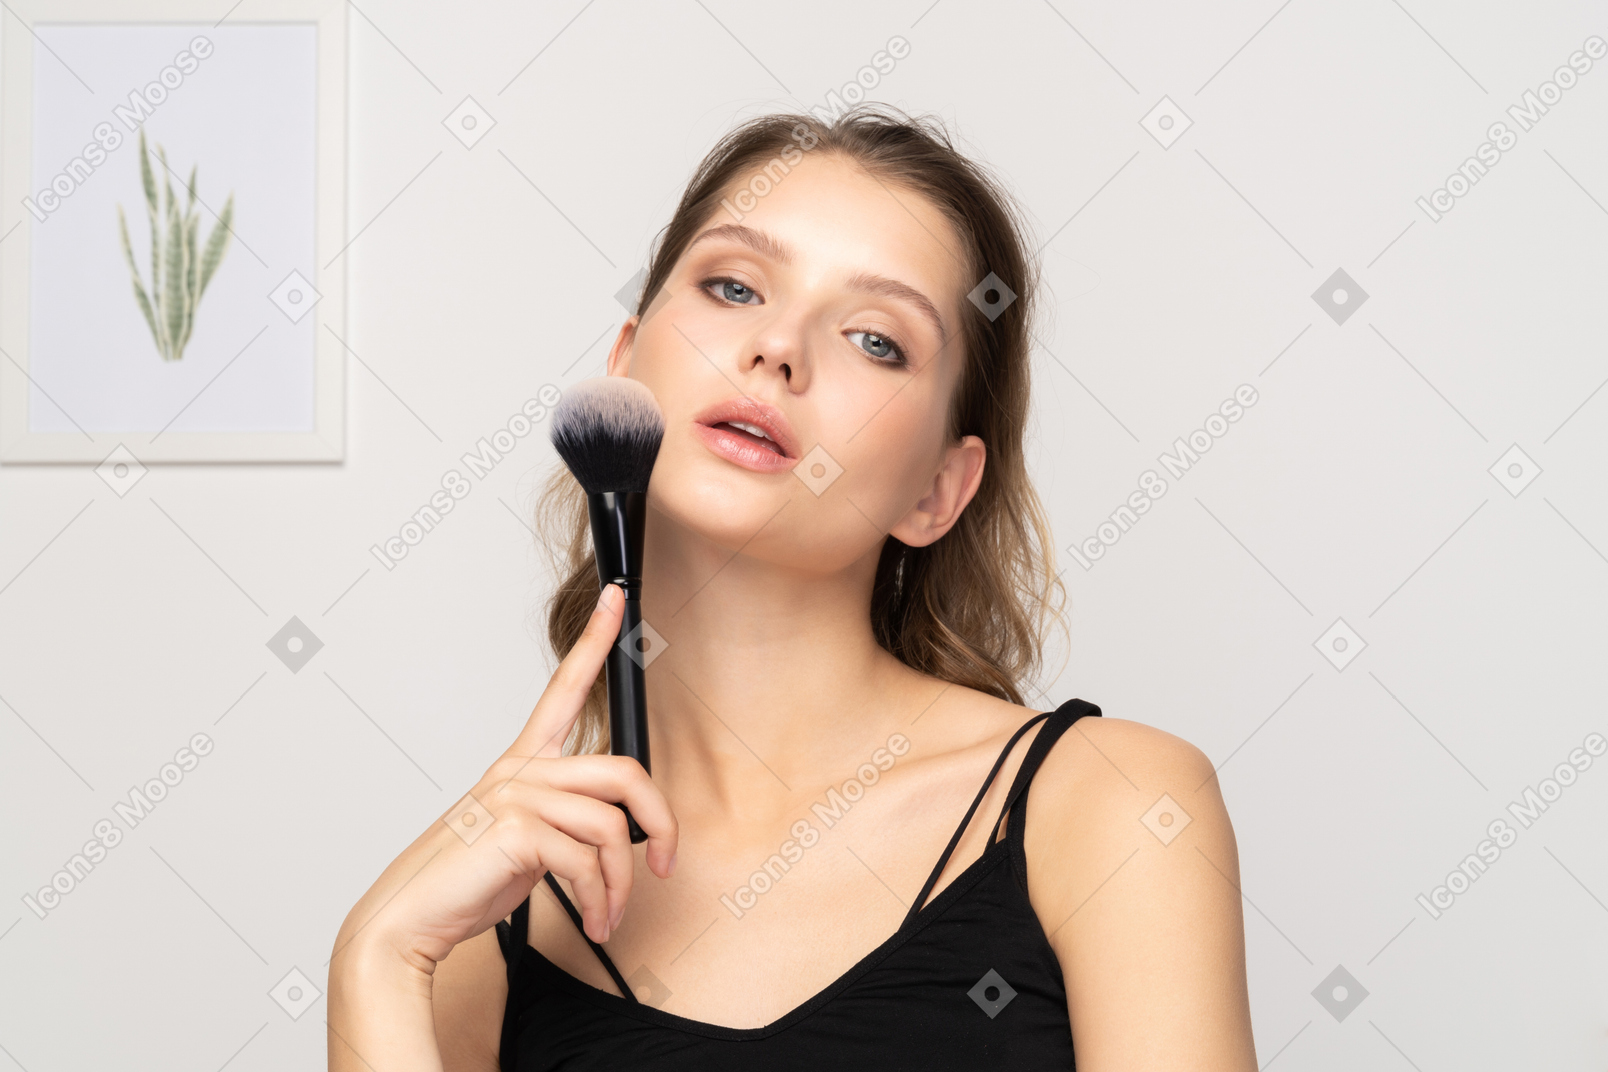 Вид спереди чувственной молодой женщины, держащей кисть для макияжа